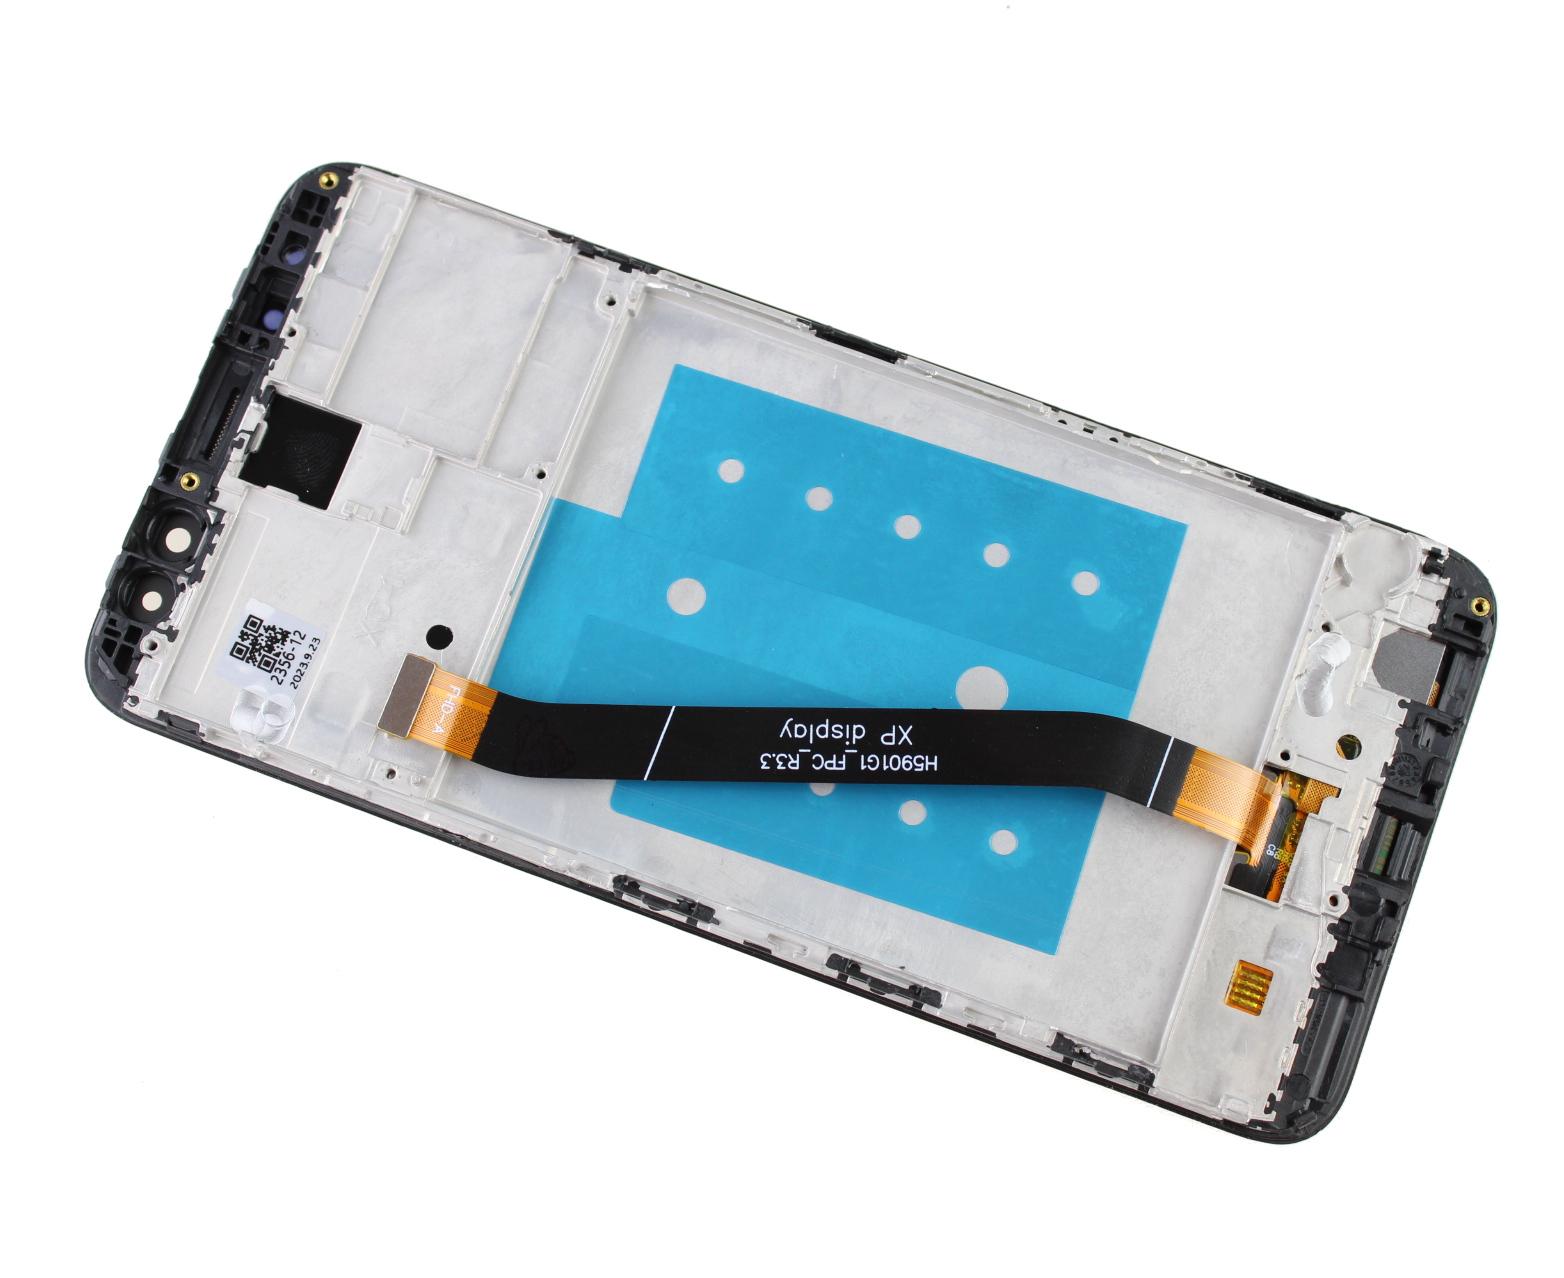 Originál LCD + Dotyková vrstva Huawei Mate 10 Lite RNE-L01 černá repasovaný díl - vyměněné sklíčko s rámečkem